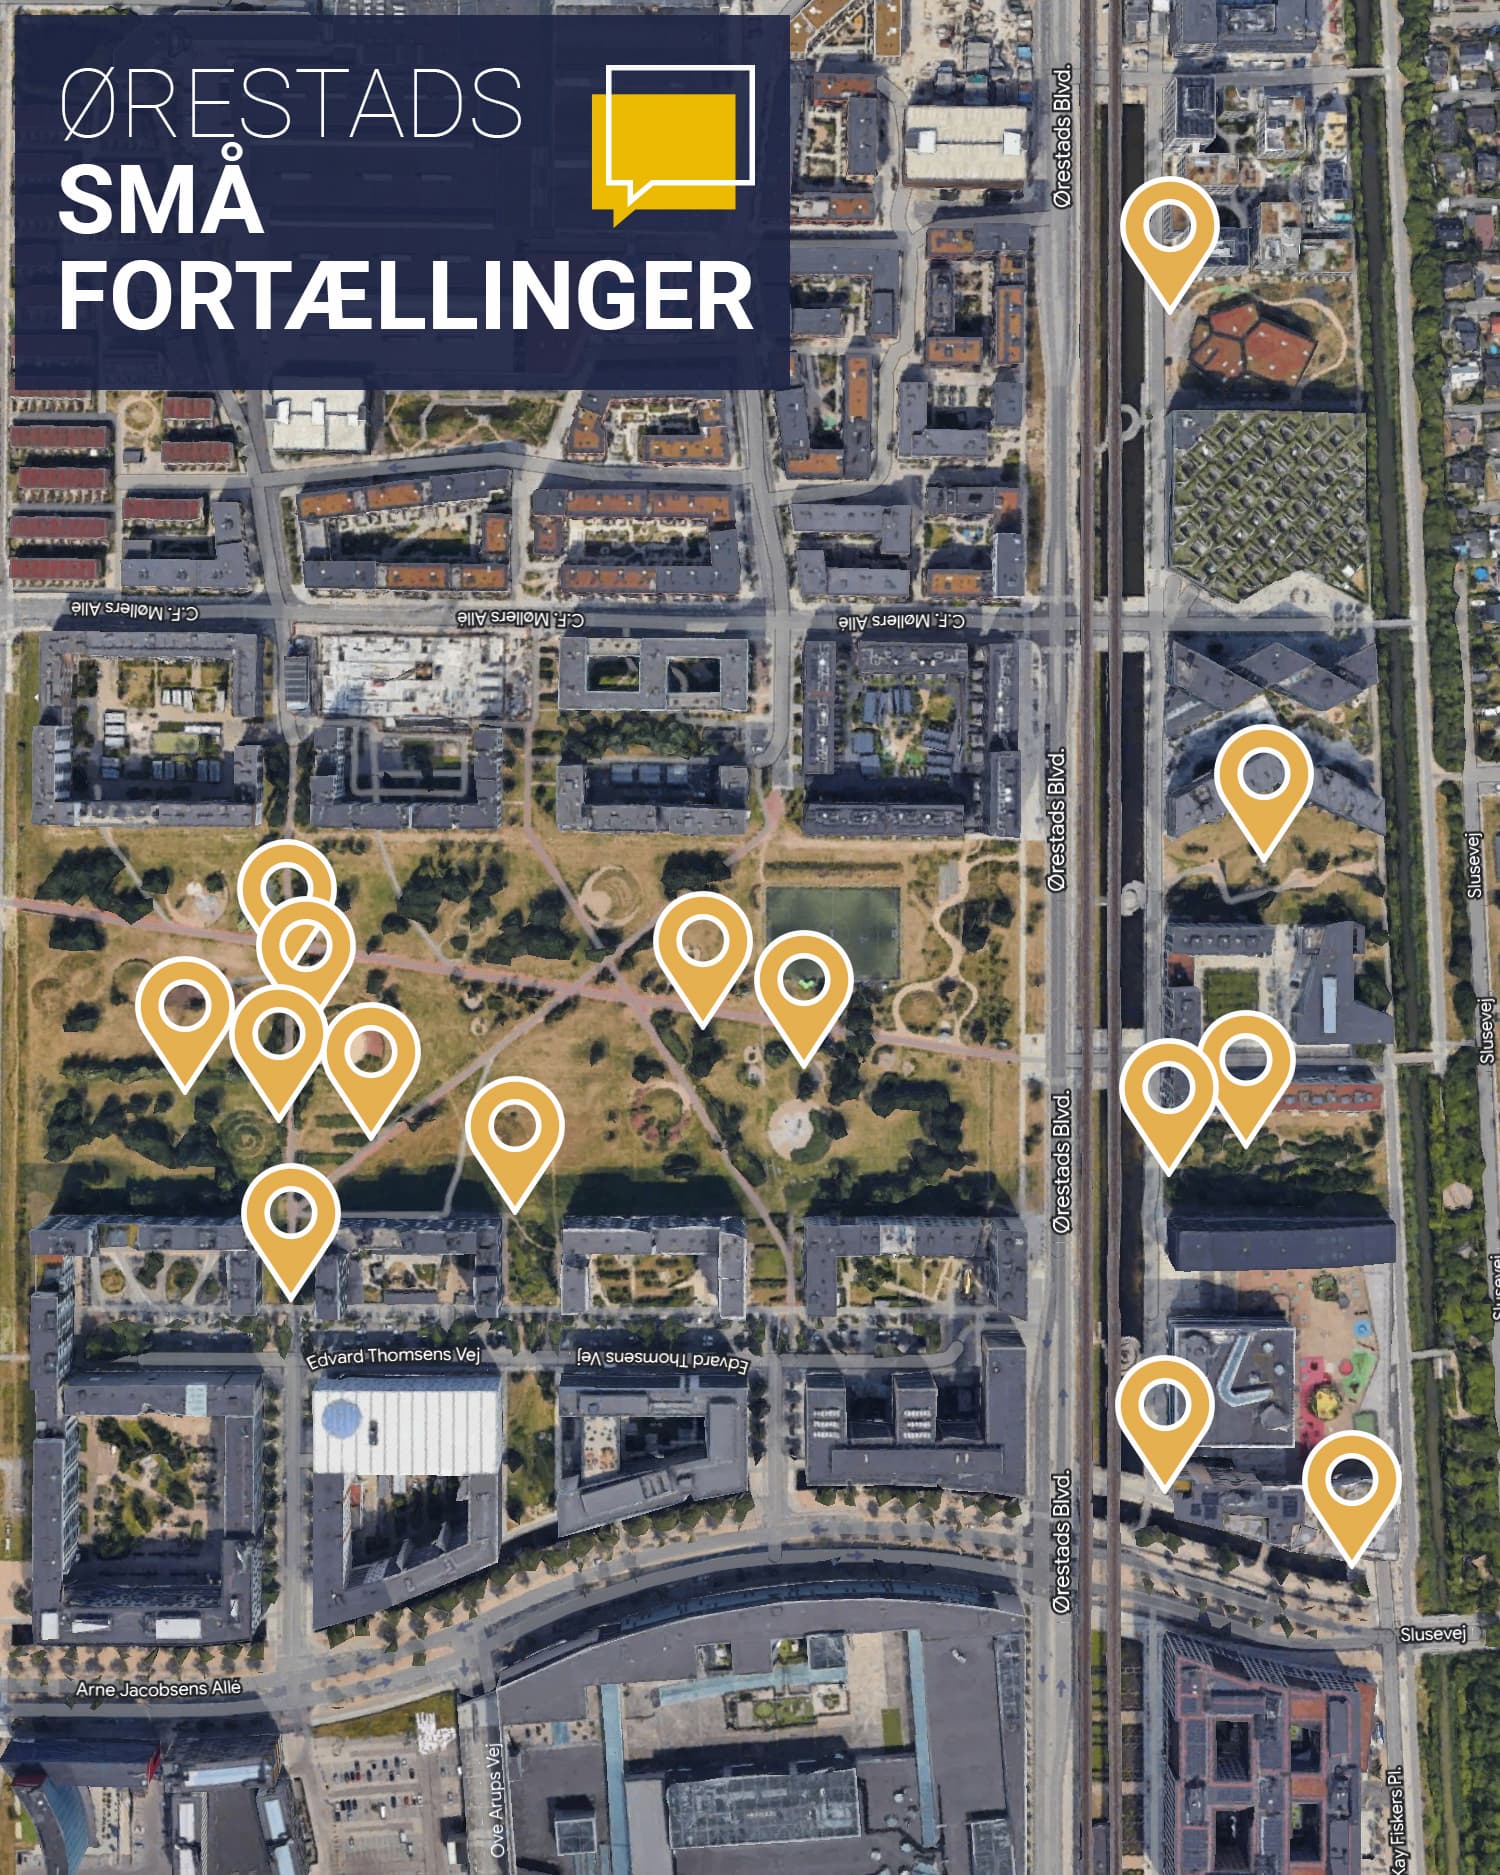 Kort, der viser placeringen af 15 skilte, som formidler Ørestads små fortællinger.